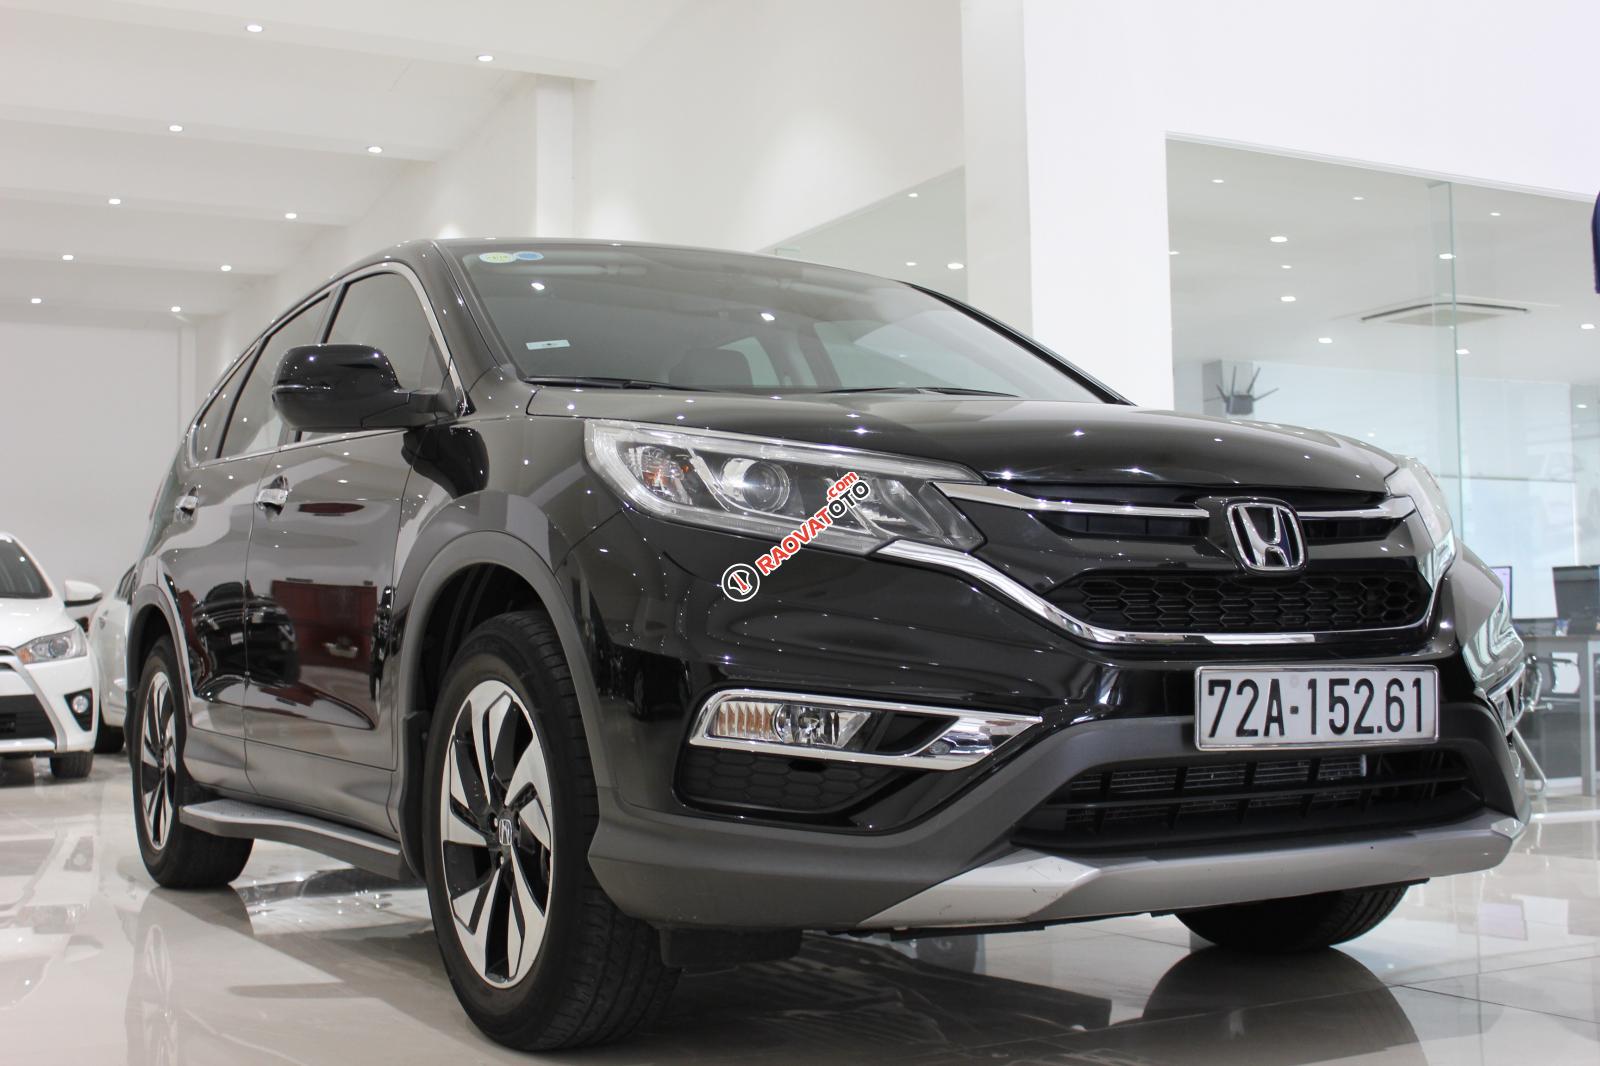 Cần bán Honda CR-V sản xuất 2015, xe công ty mua từ đầu chính hãng Honda, có xuất hóa đơn-15